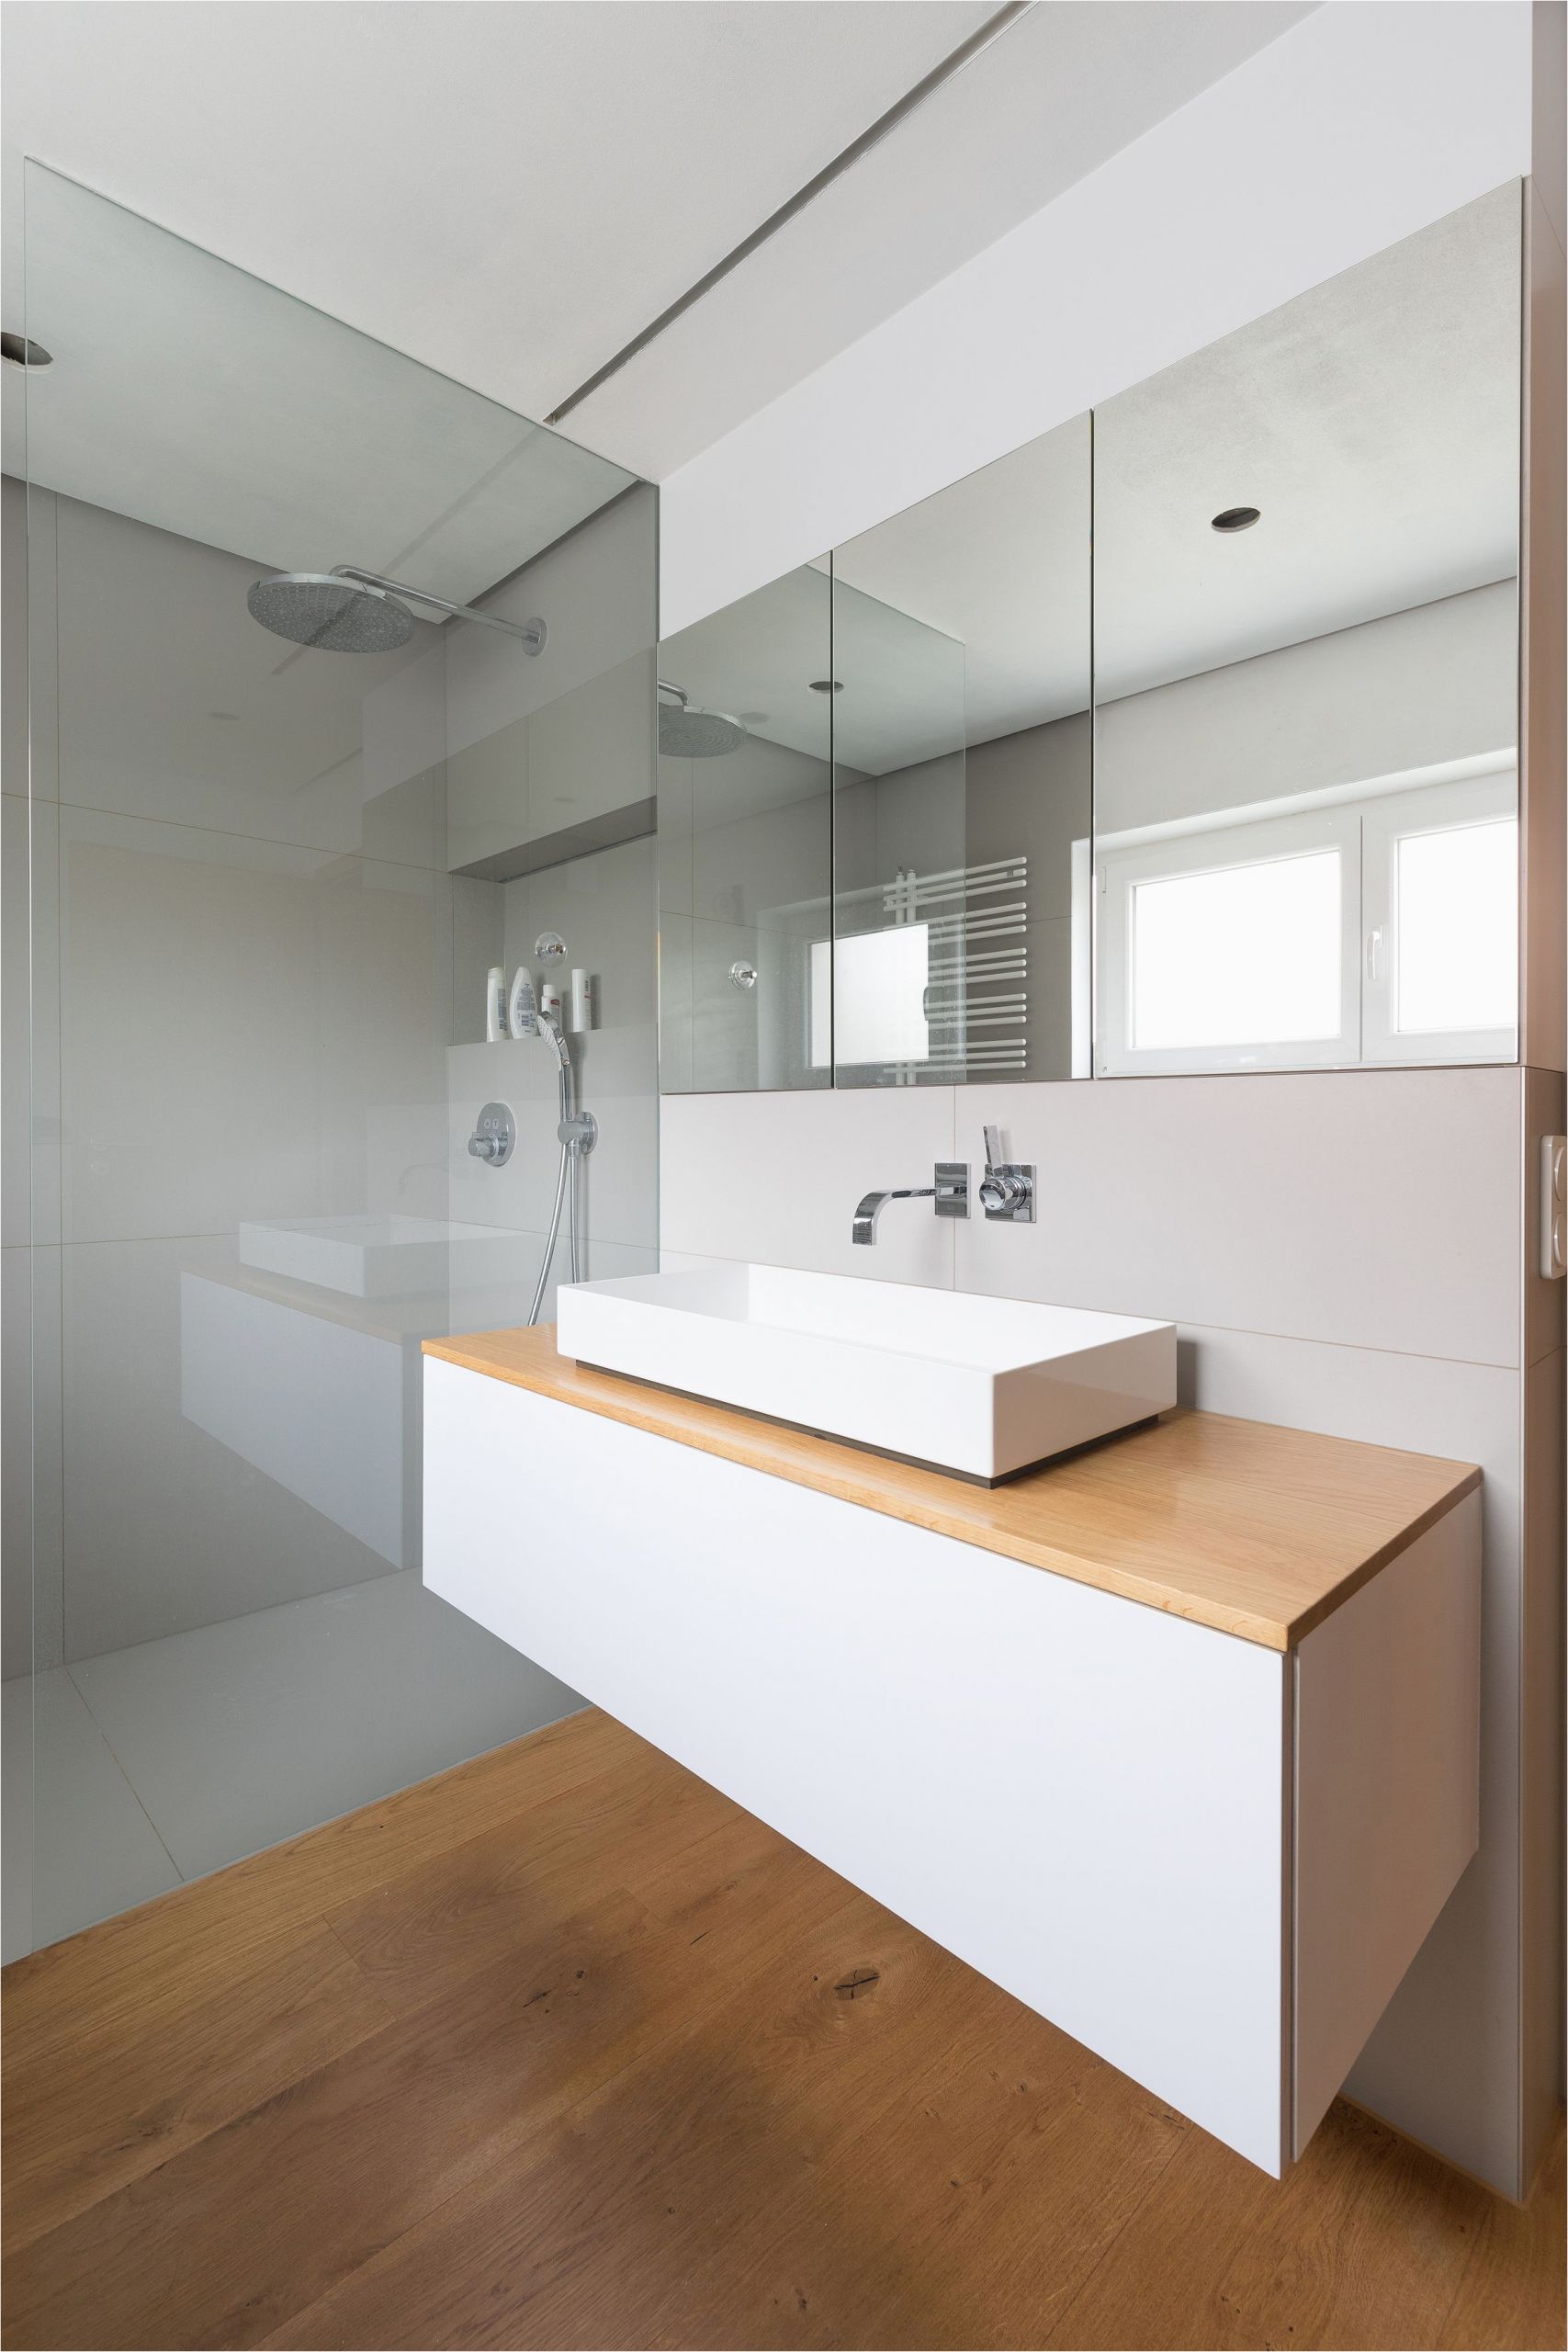 Badezimmer top Modern Bad Badezimmer Einbauschrank